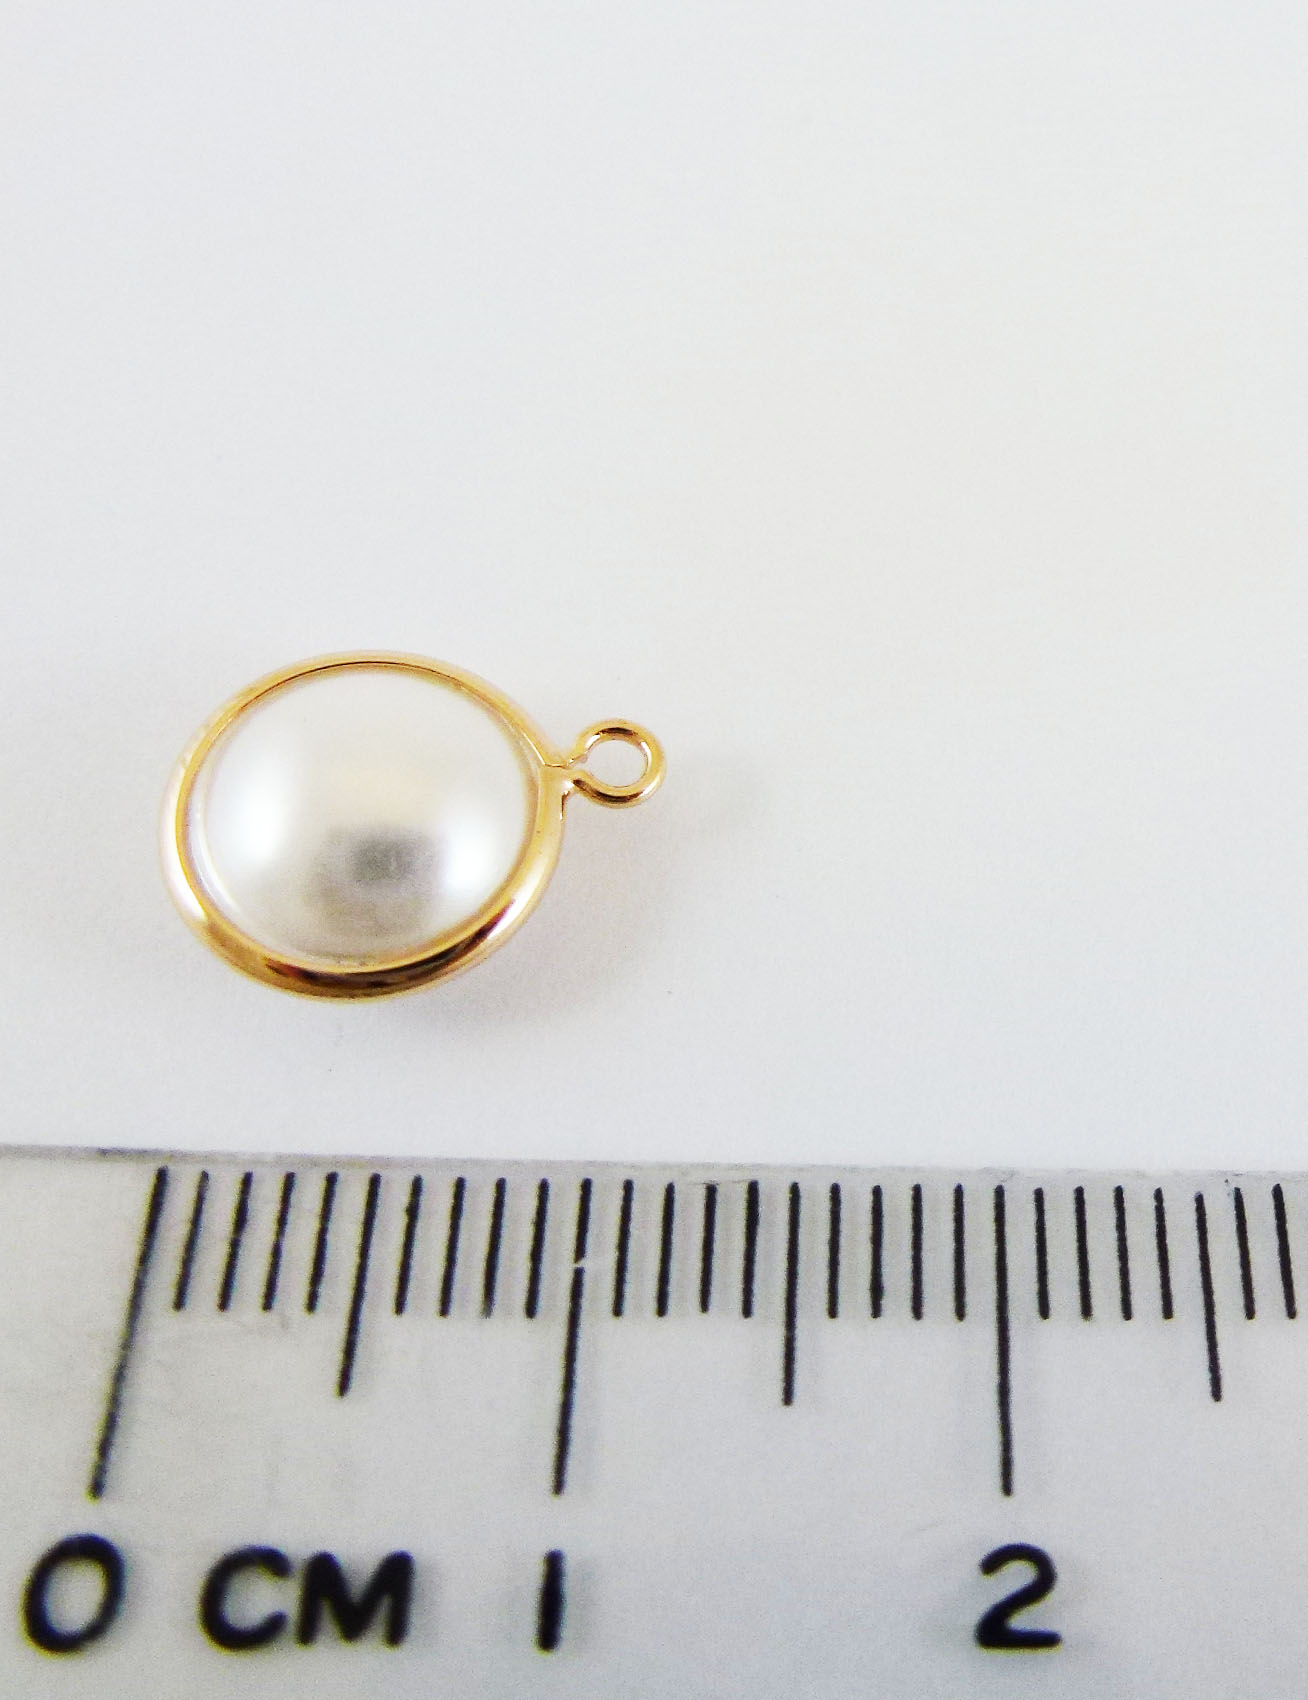 10mm銅鍍玫瑰金單孔圓扁珠-白色